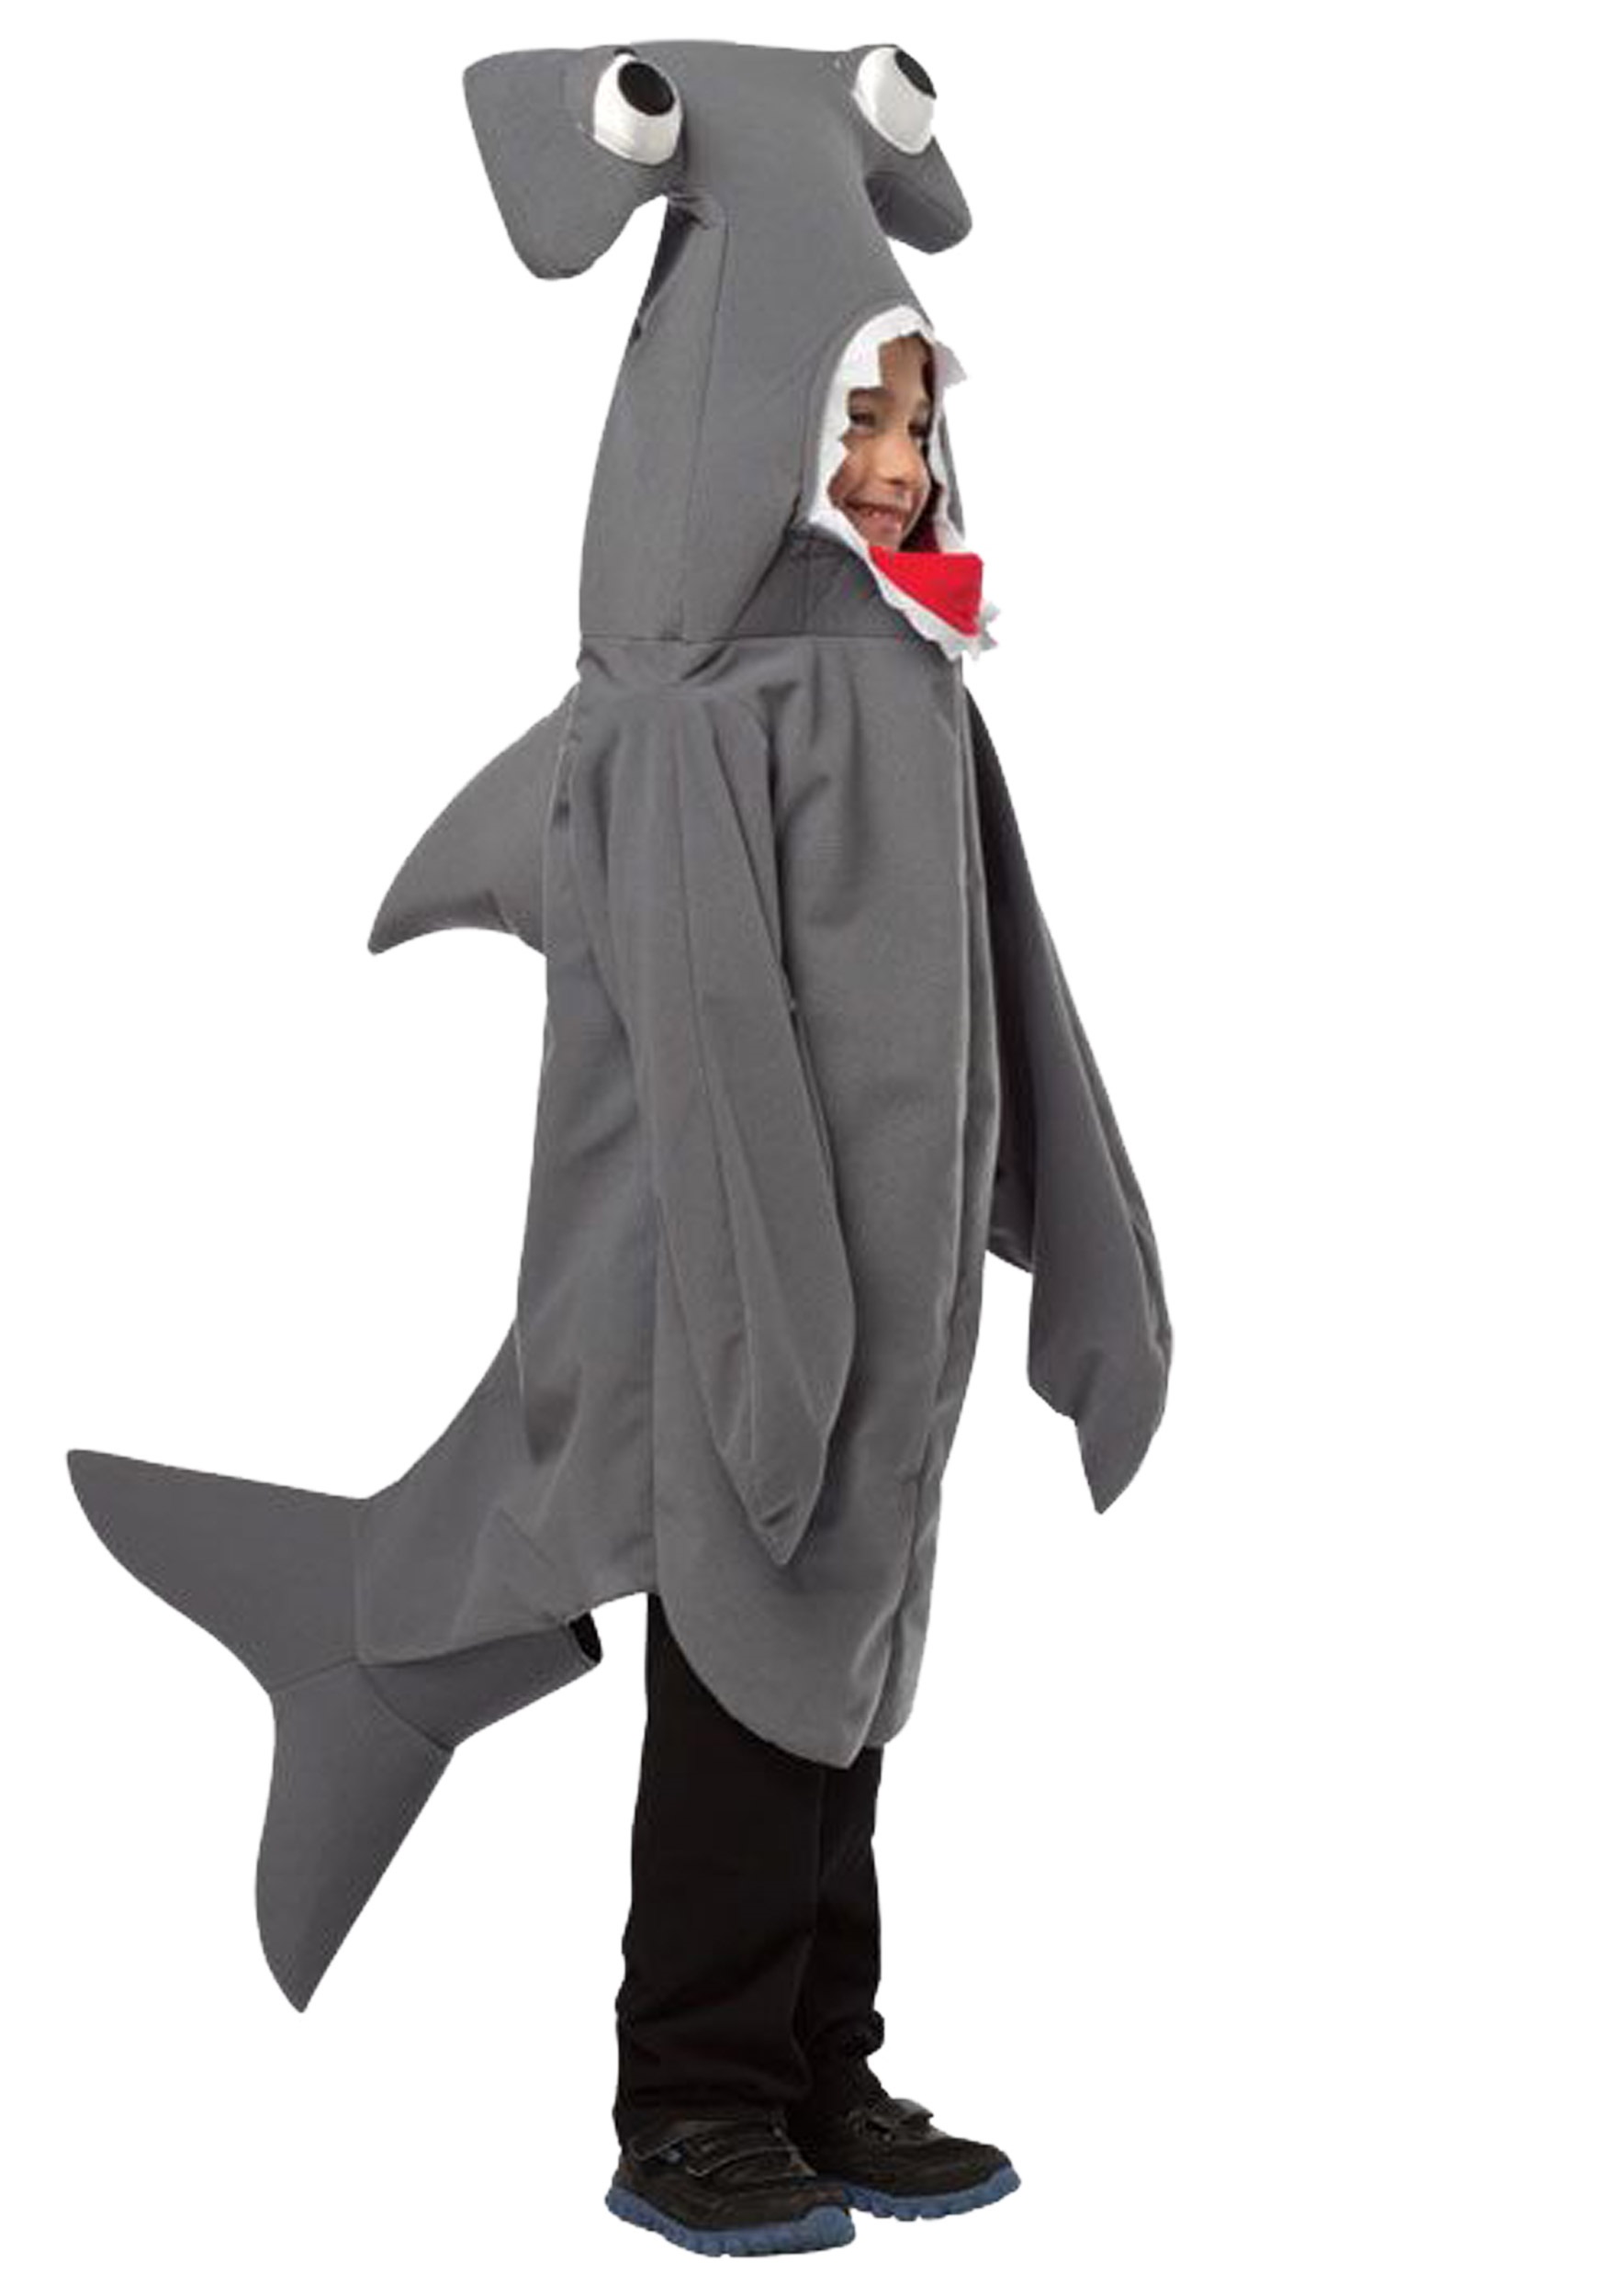 Hammerhead Shark Costume for Kids